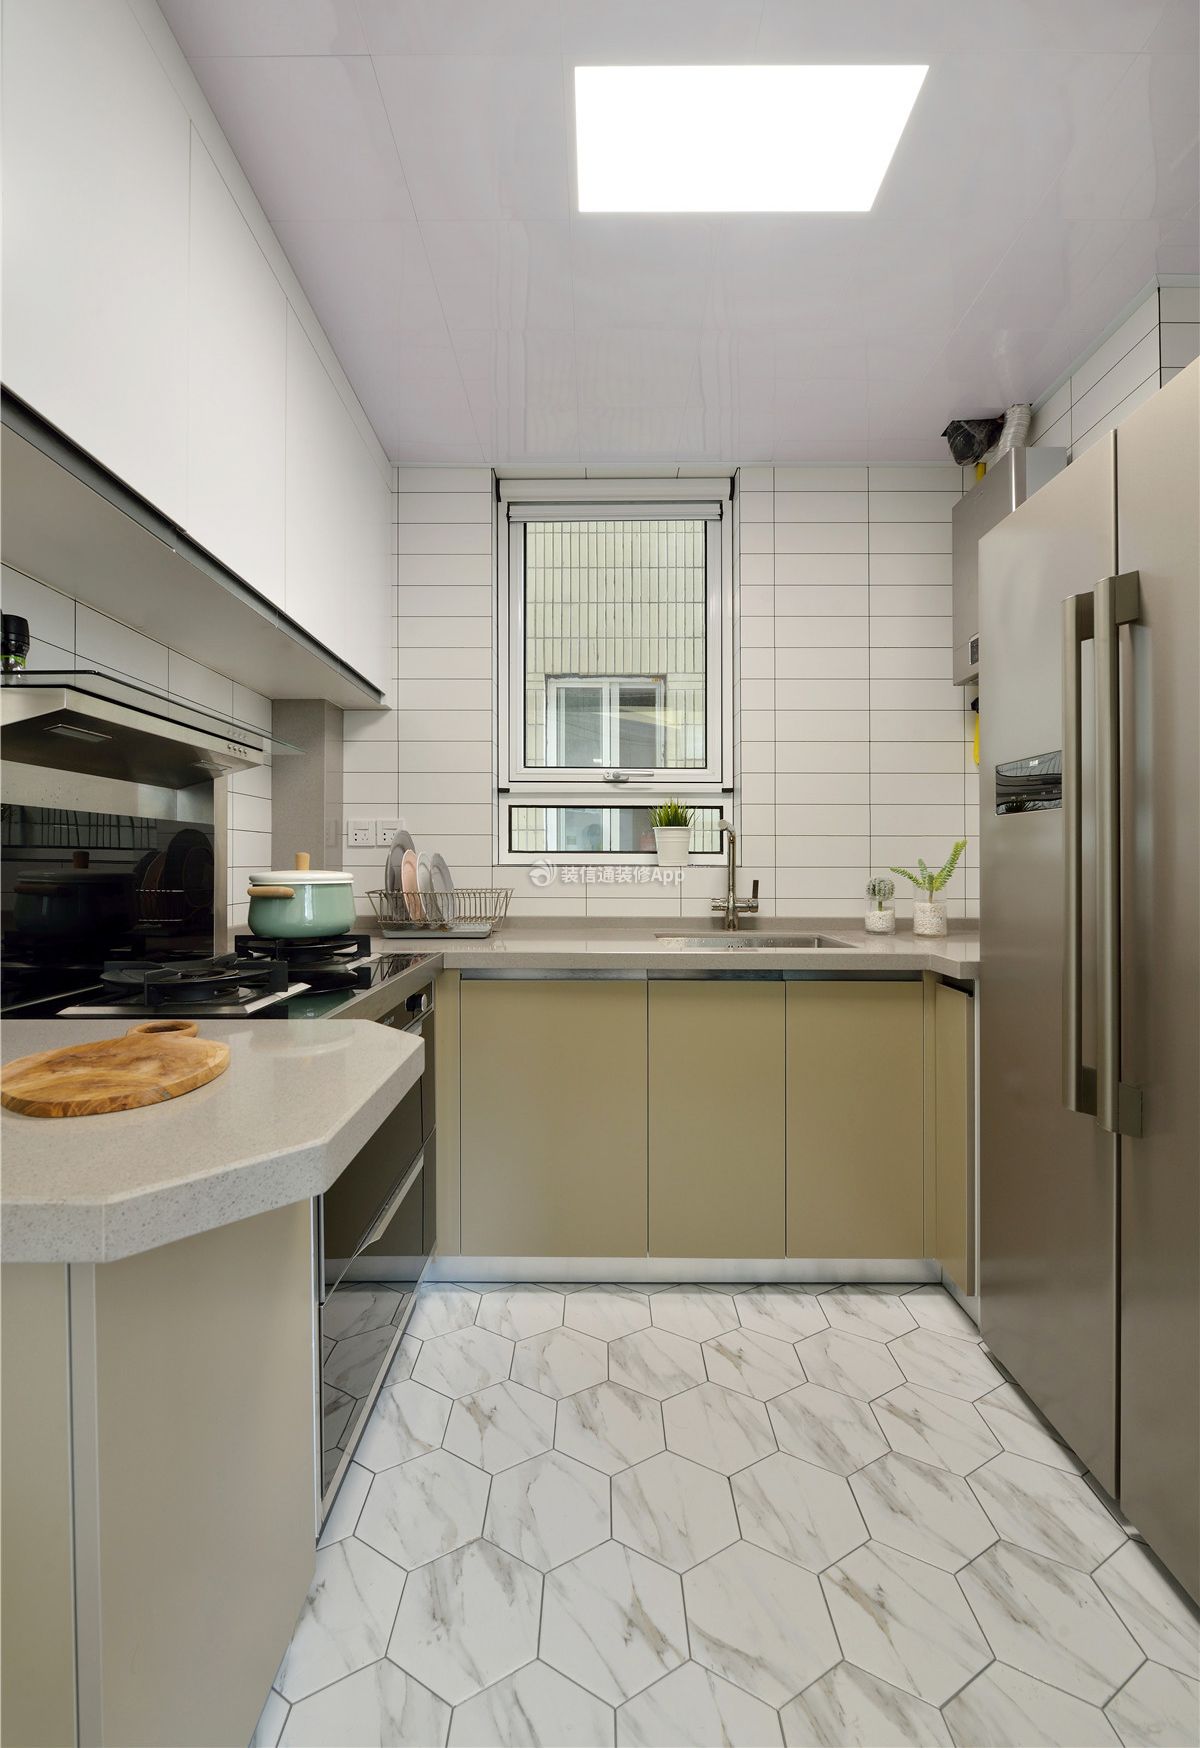 55平米小户型厨房简约现代装修效果图